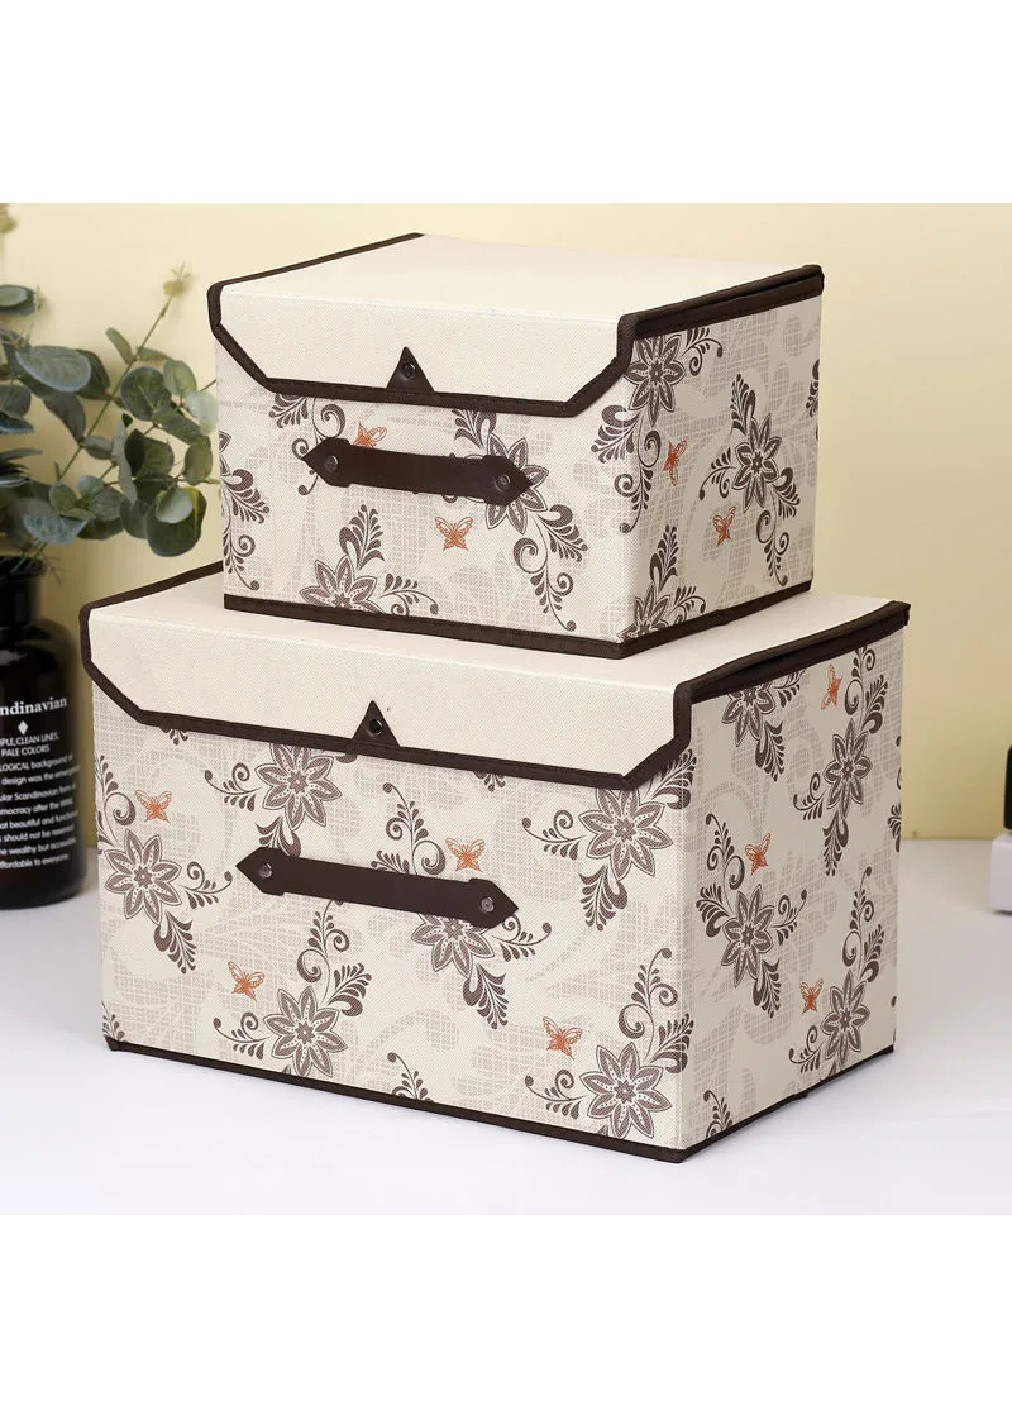 Комплект набор органайзеров кейсов боксов для хранения одежды личных вещей 2 шт (475058-Prob) Бежевый с коричневыми цветами Unbranded (261030915)